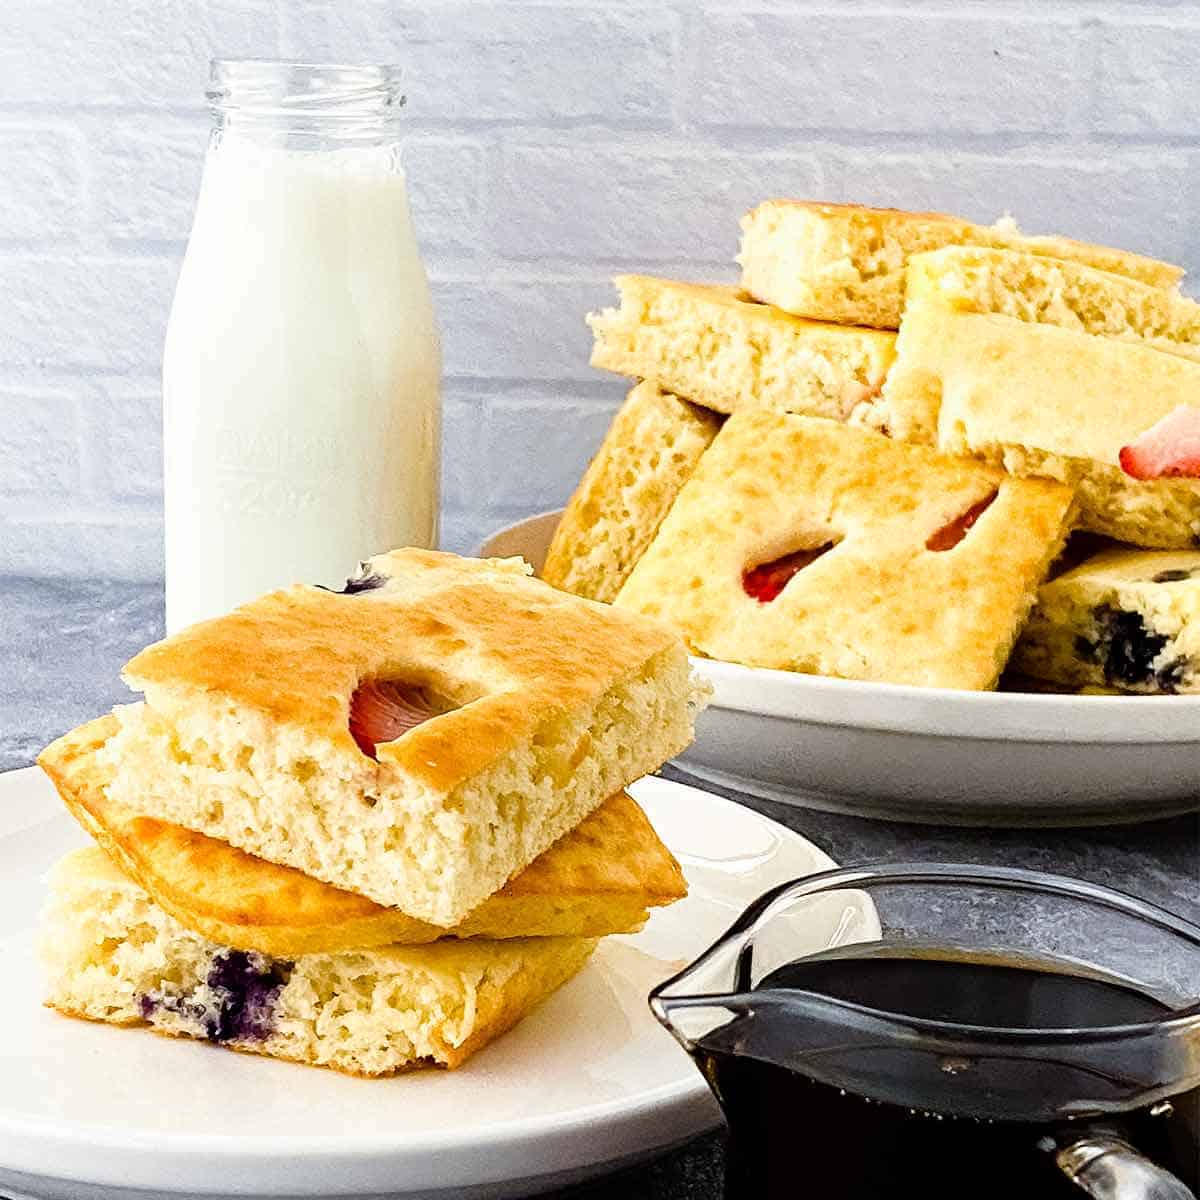 https://sundaysuppermovement.com/wp-content/uploads/2022/01/sheet-pan-pancakes-featured-2.jpg